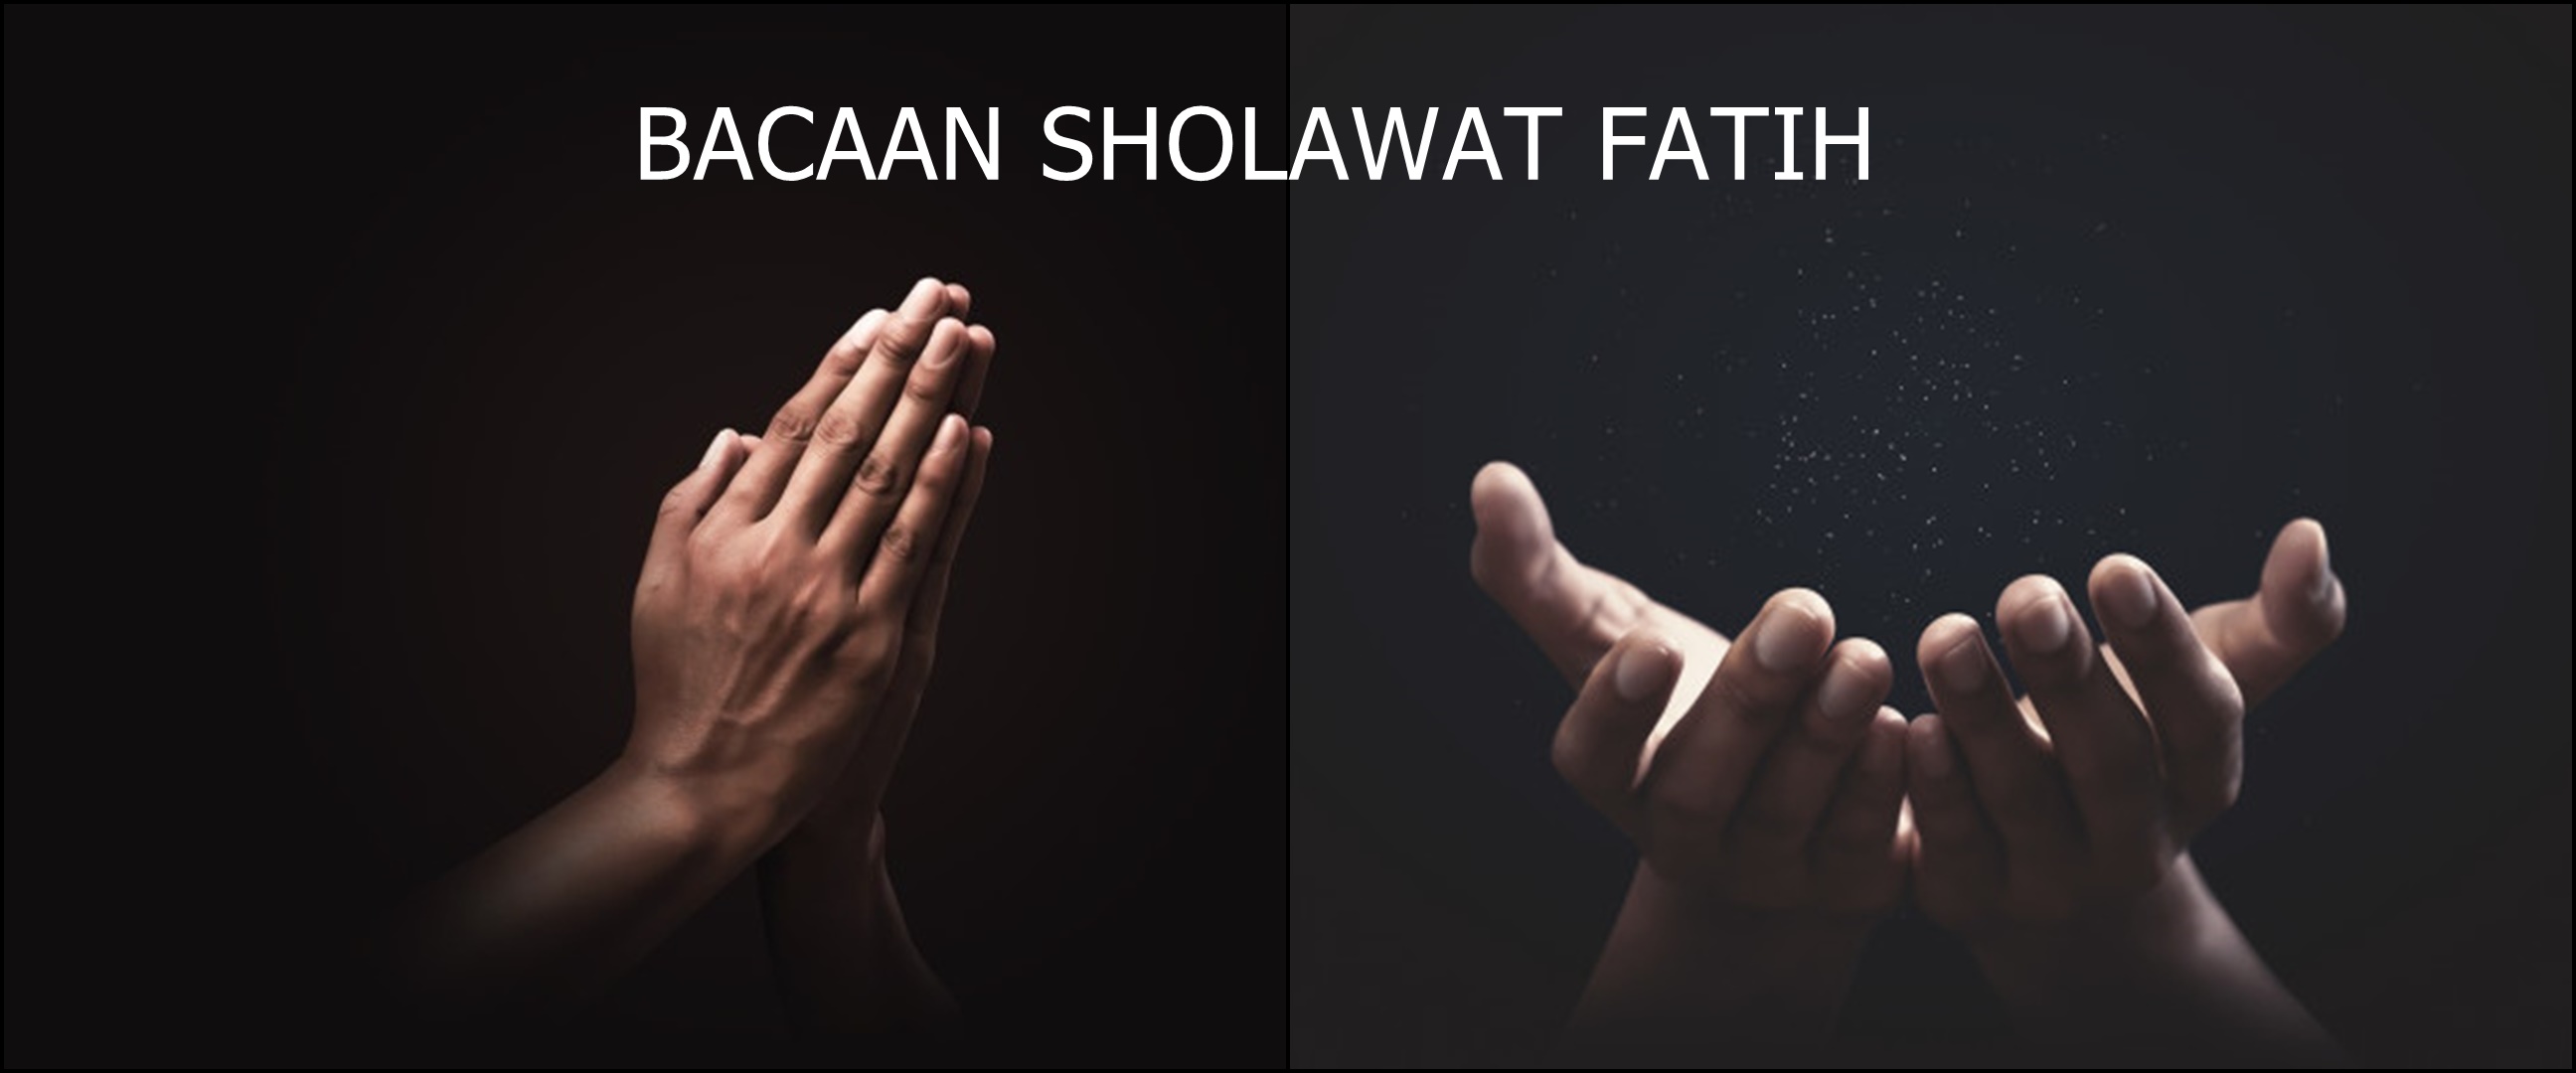 Bacaan sholawat fatih beserta keutamaan bagi Muslim yang membacanya